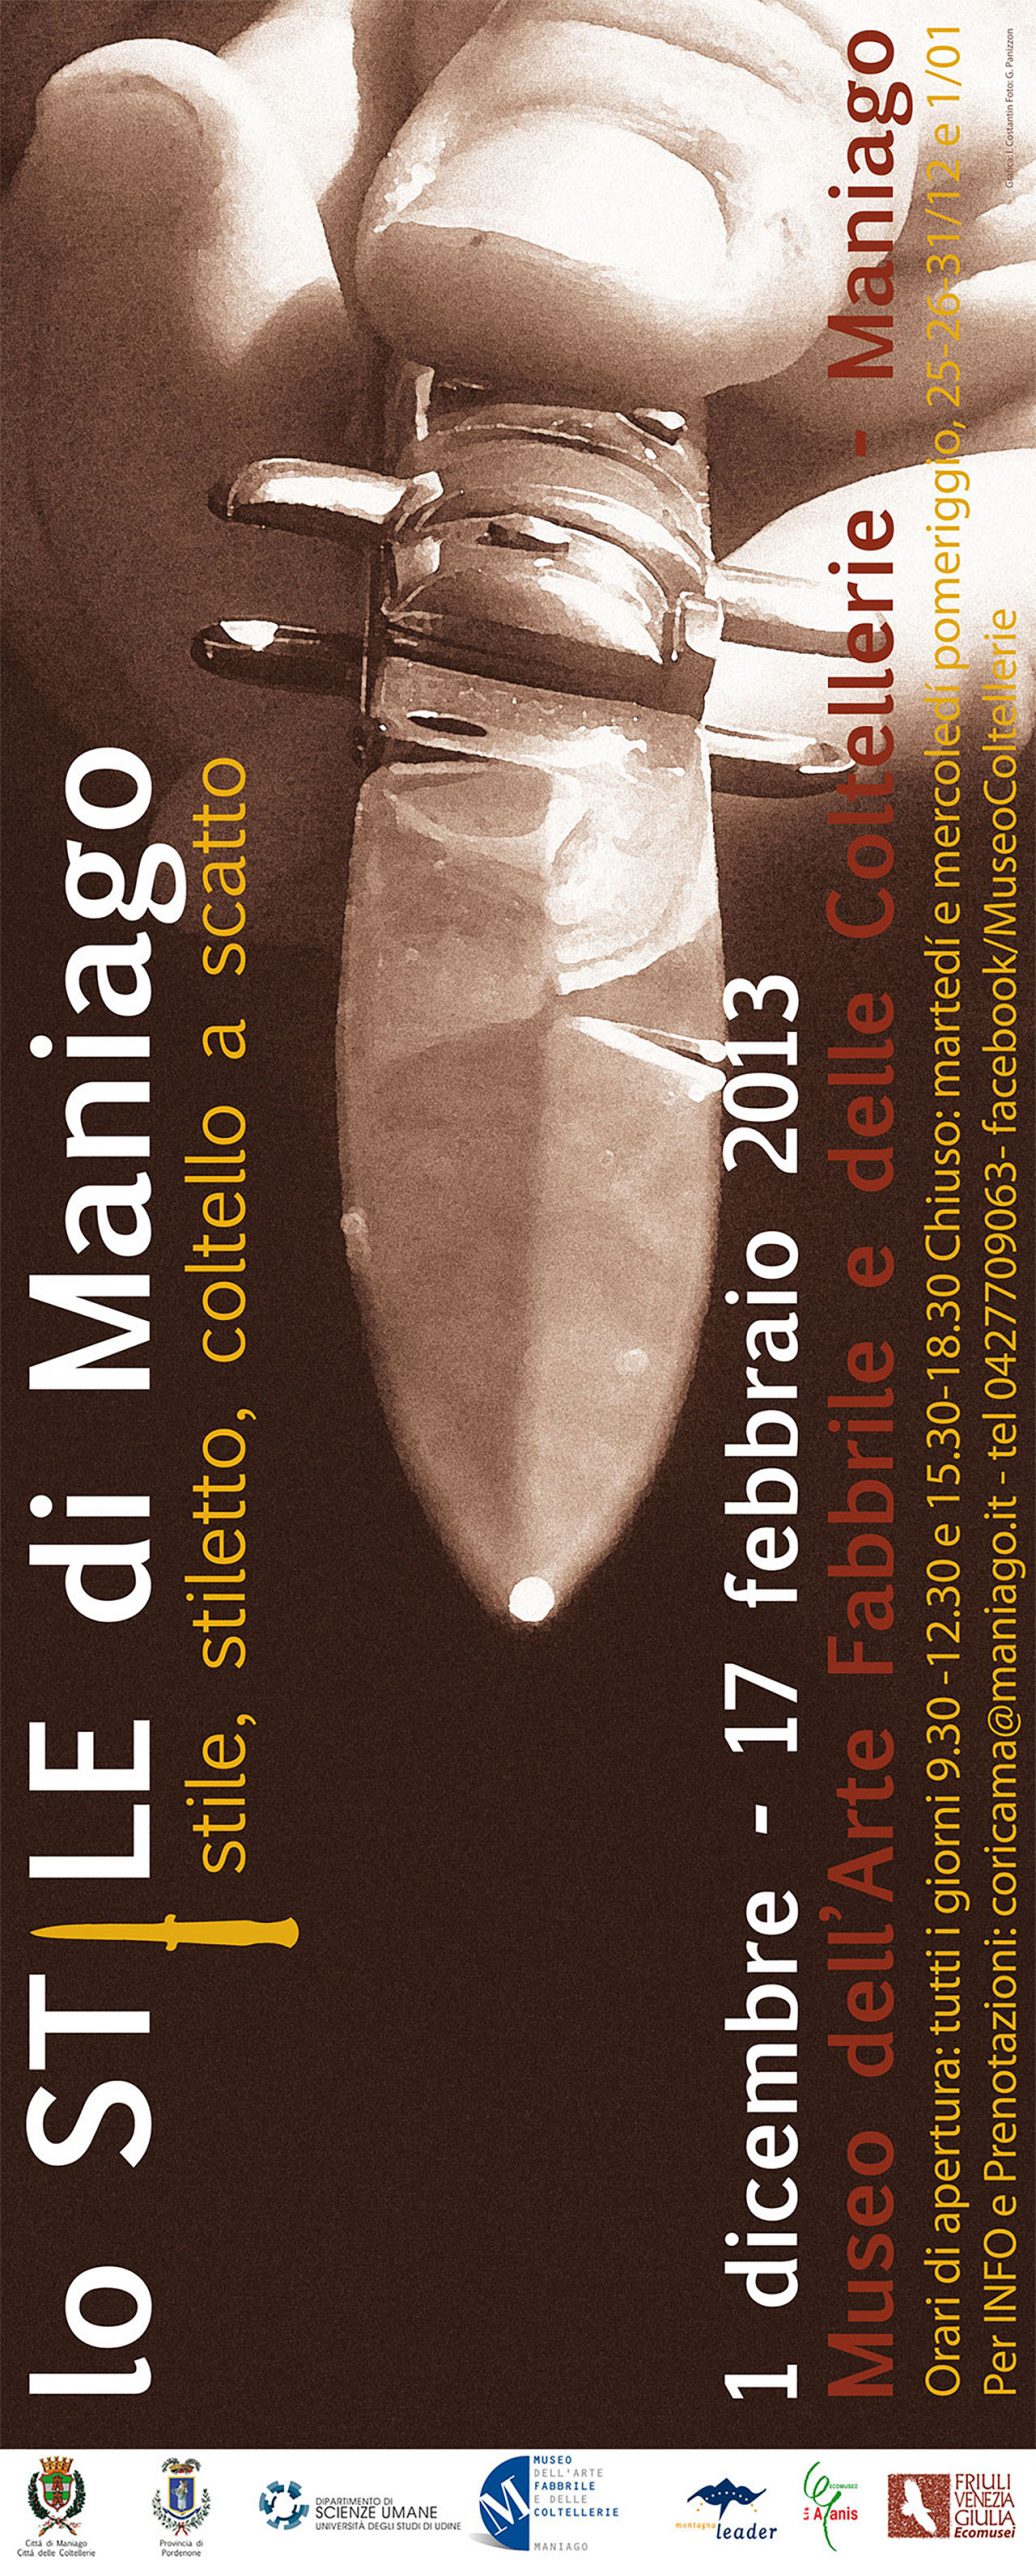 Stile, Stiletto, Coltello a scatto - 2012 / 2013  Museo dell'Arte Fabbrile  e delle Coltellerie di Maniago